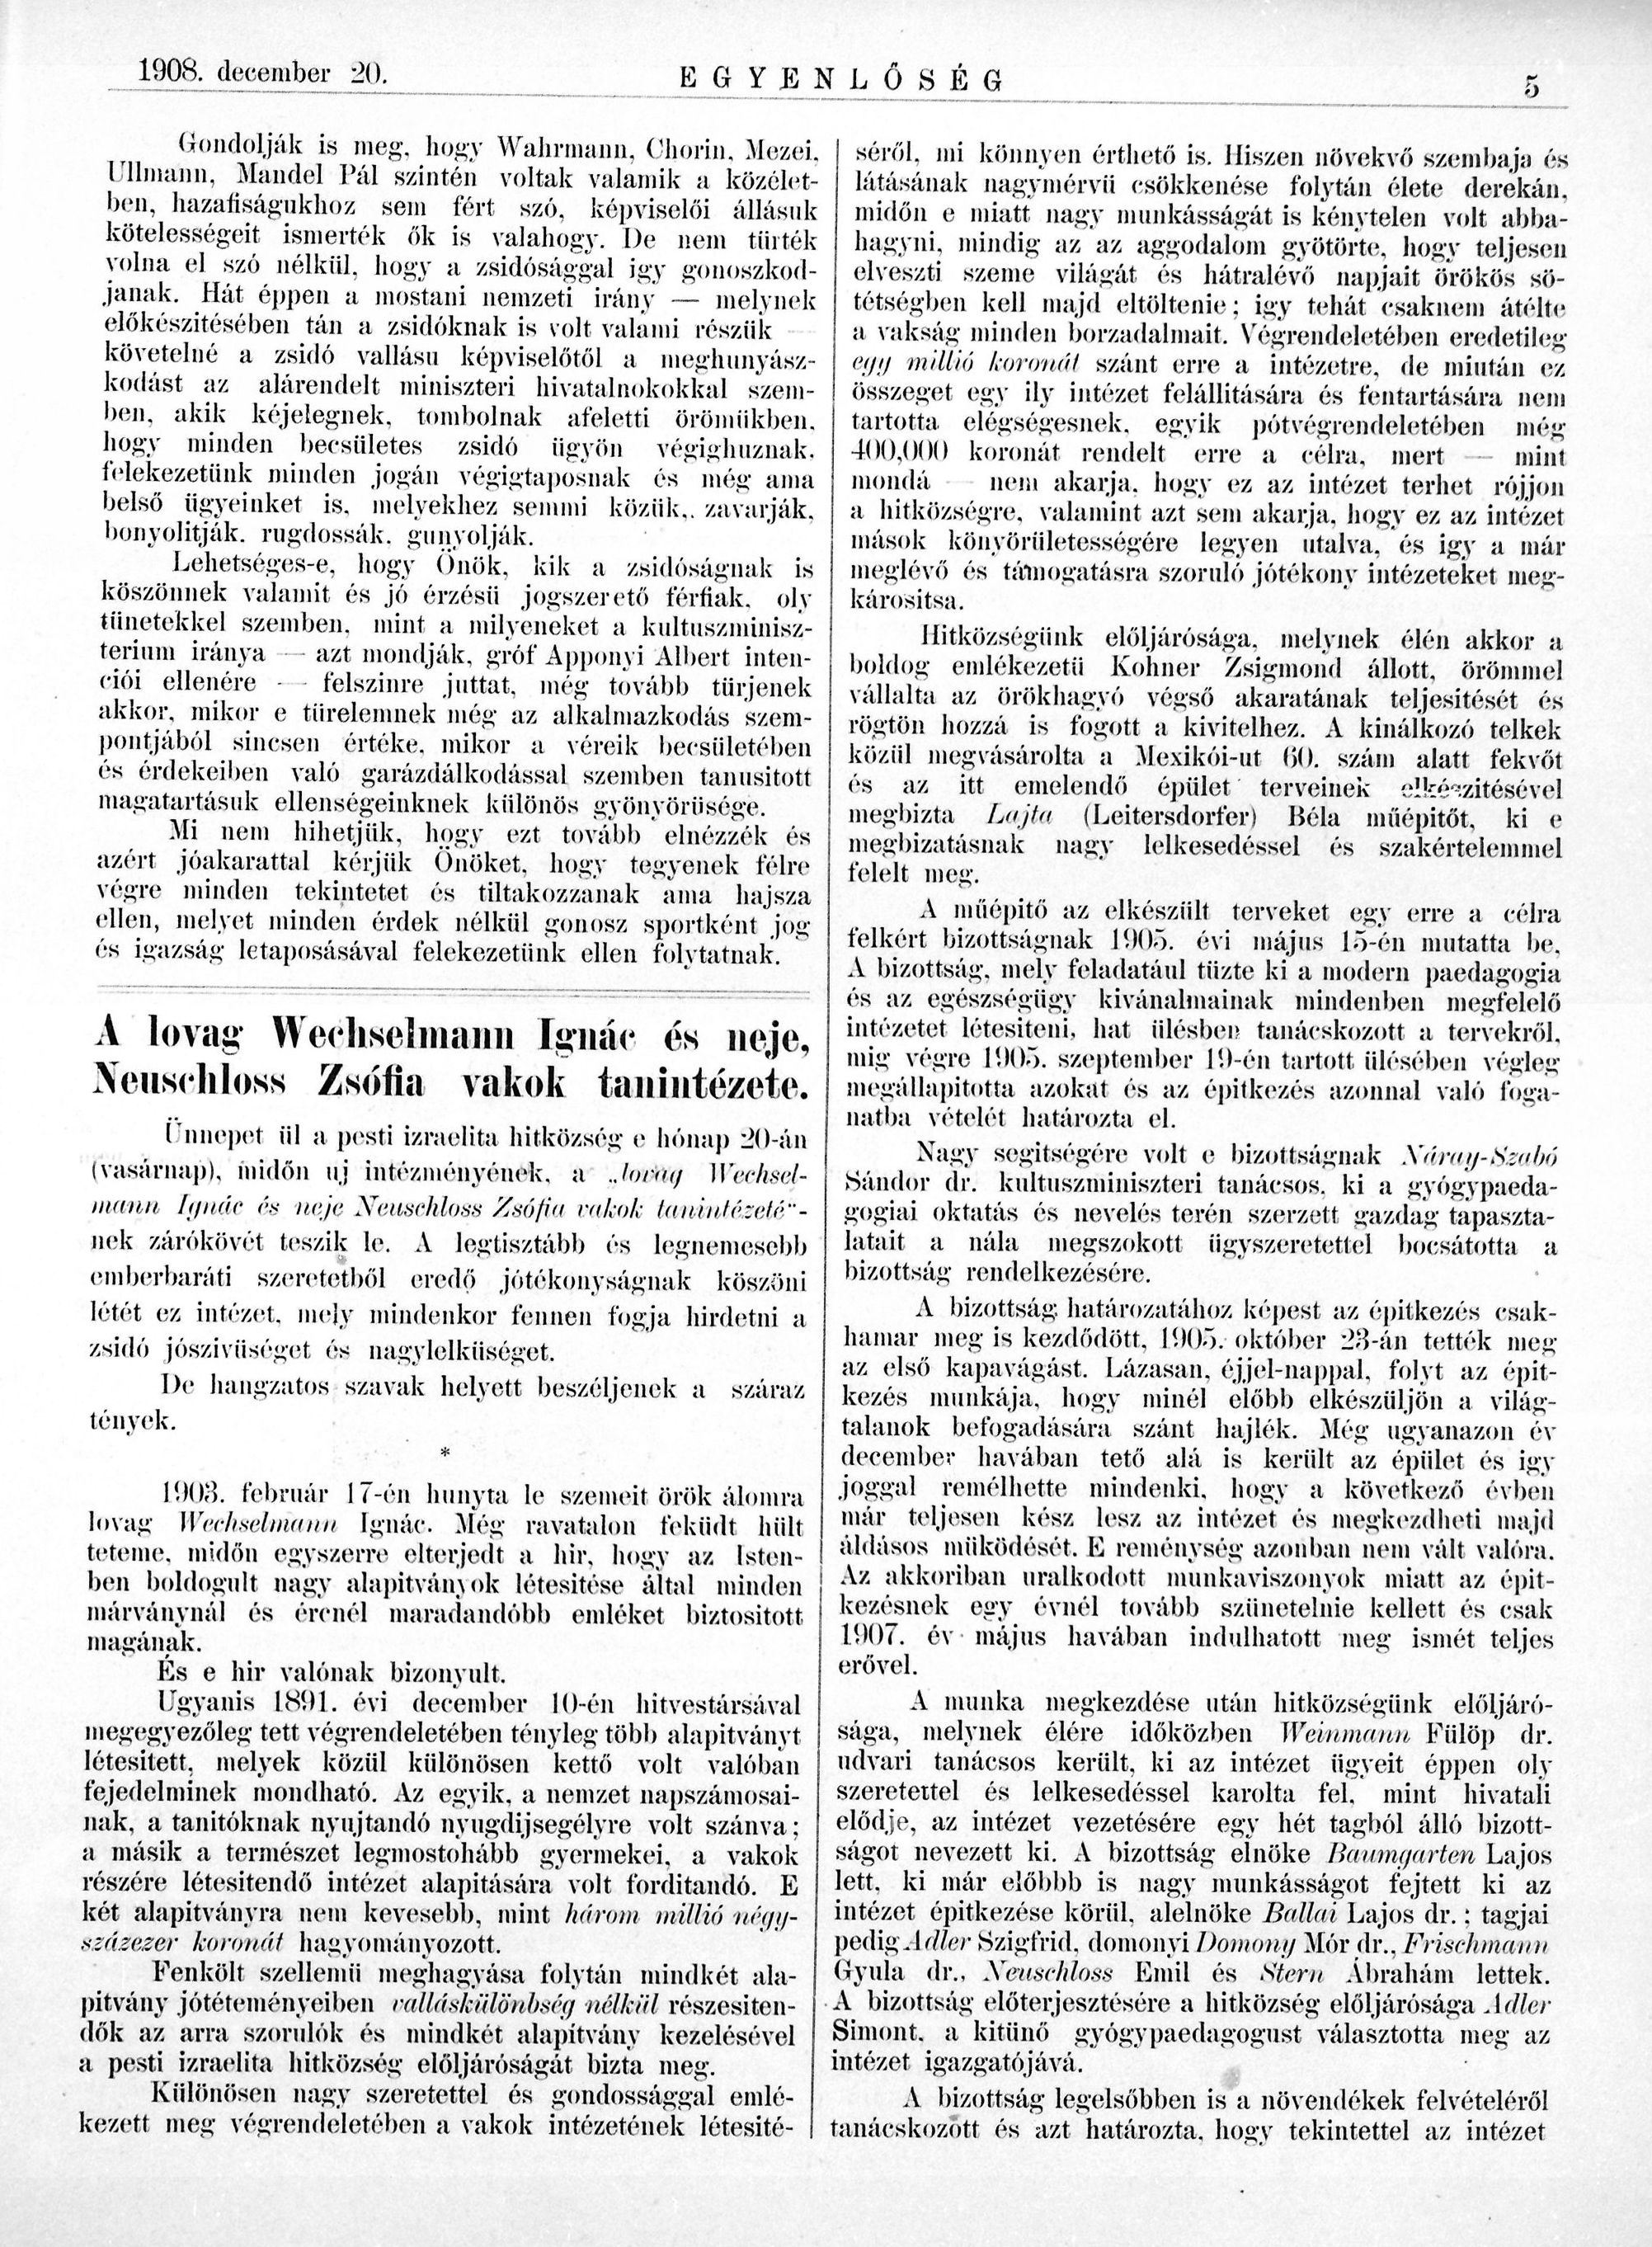 04_Egyenlőség, 1908. XII. 20. 5. p. 